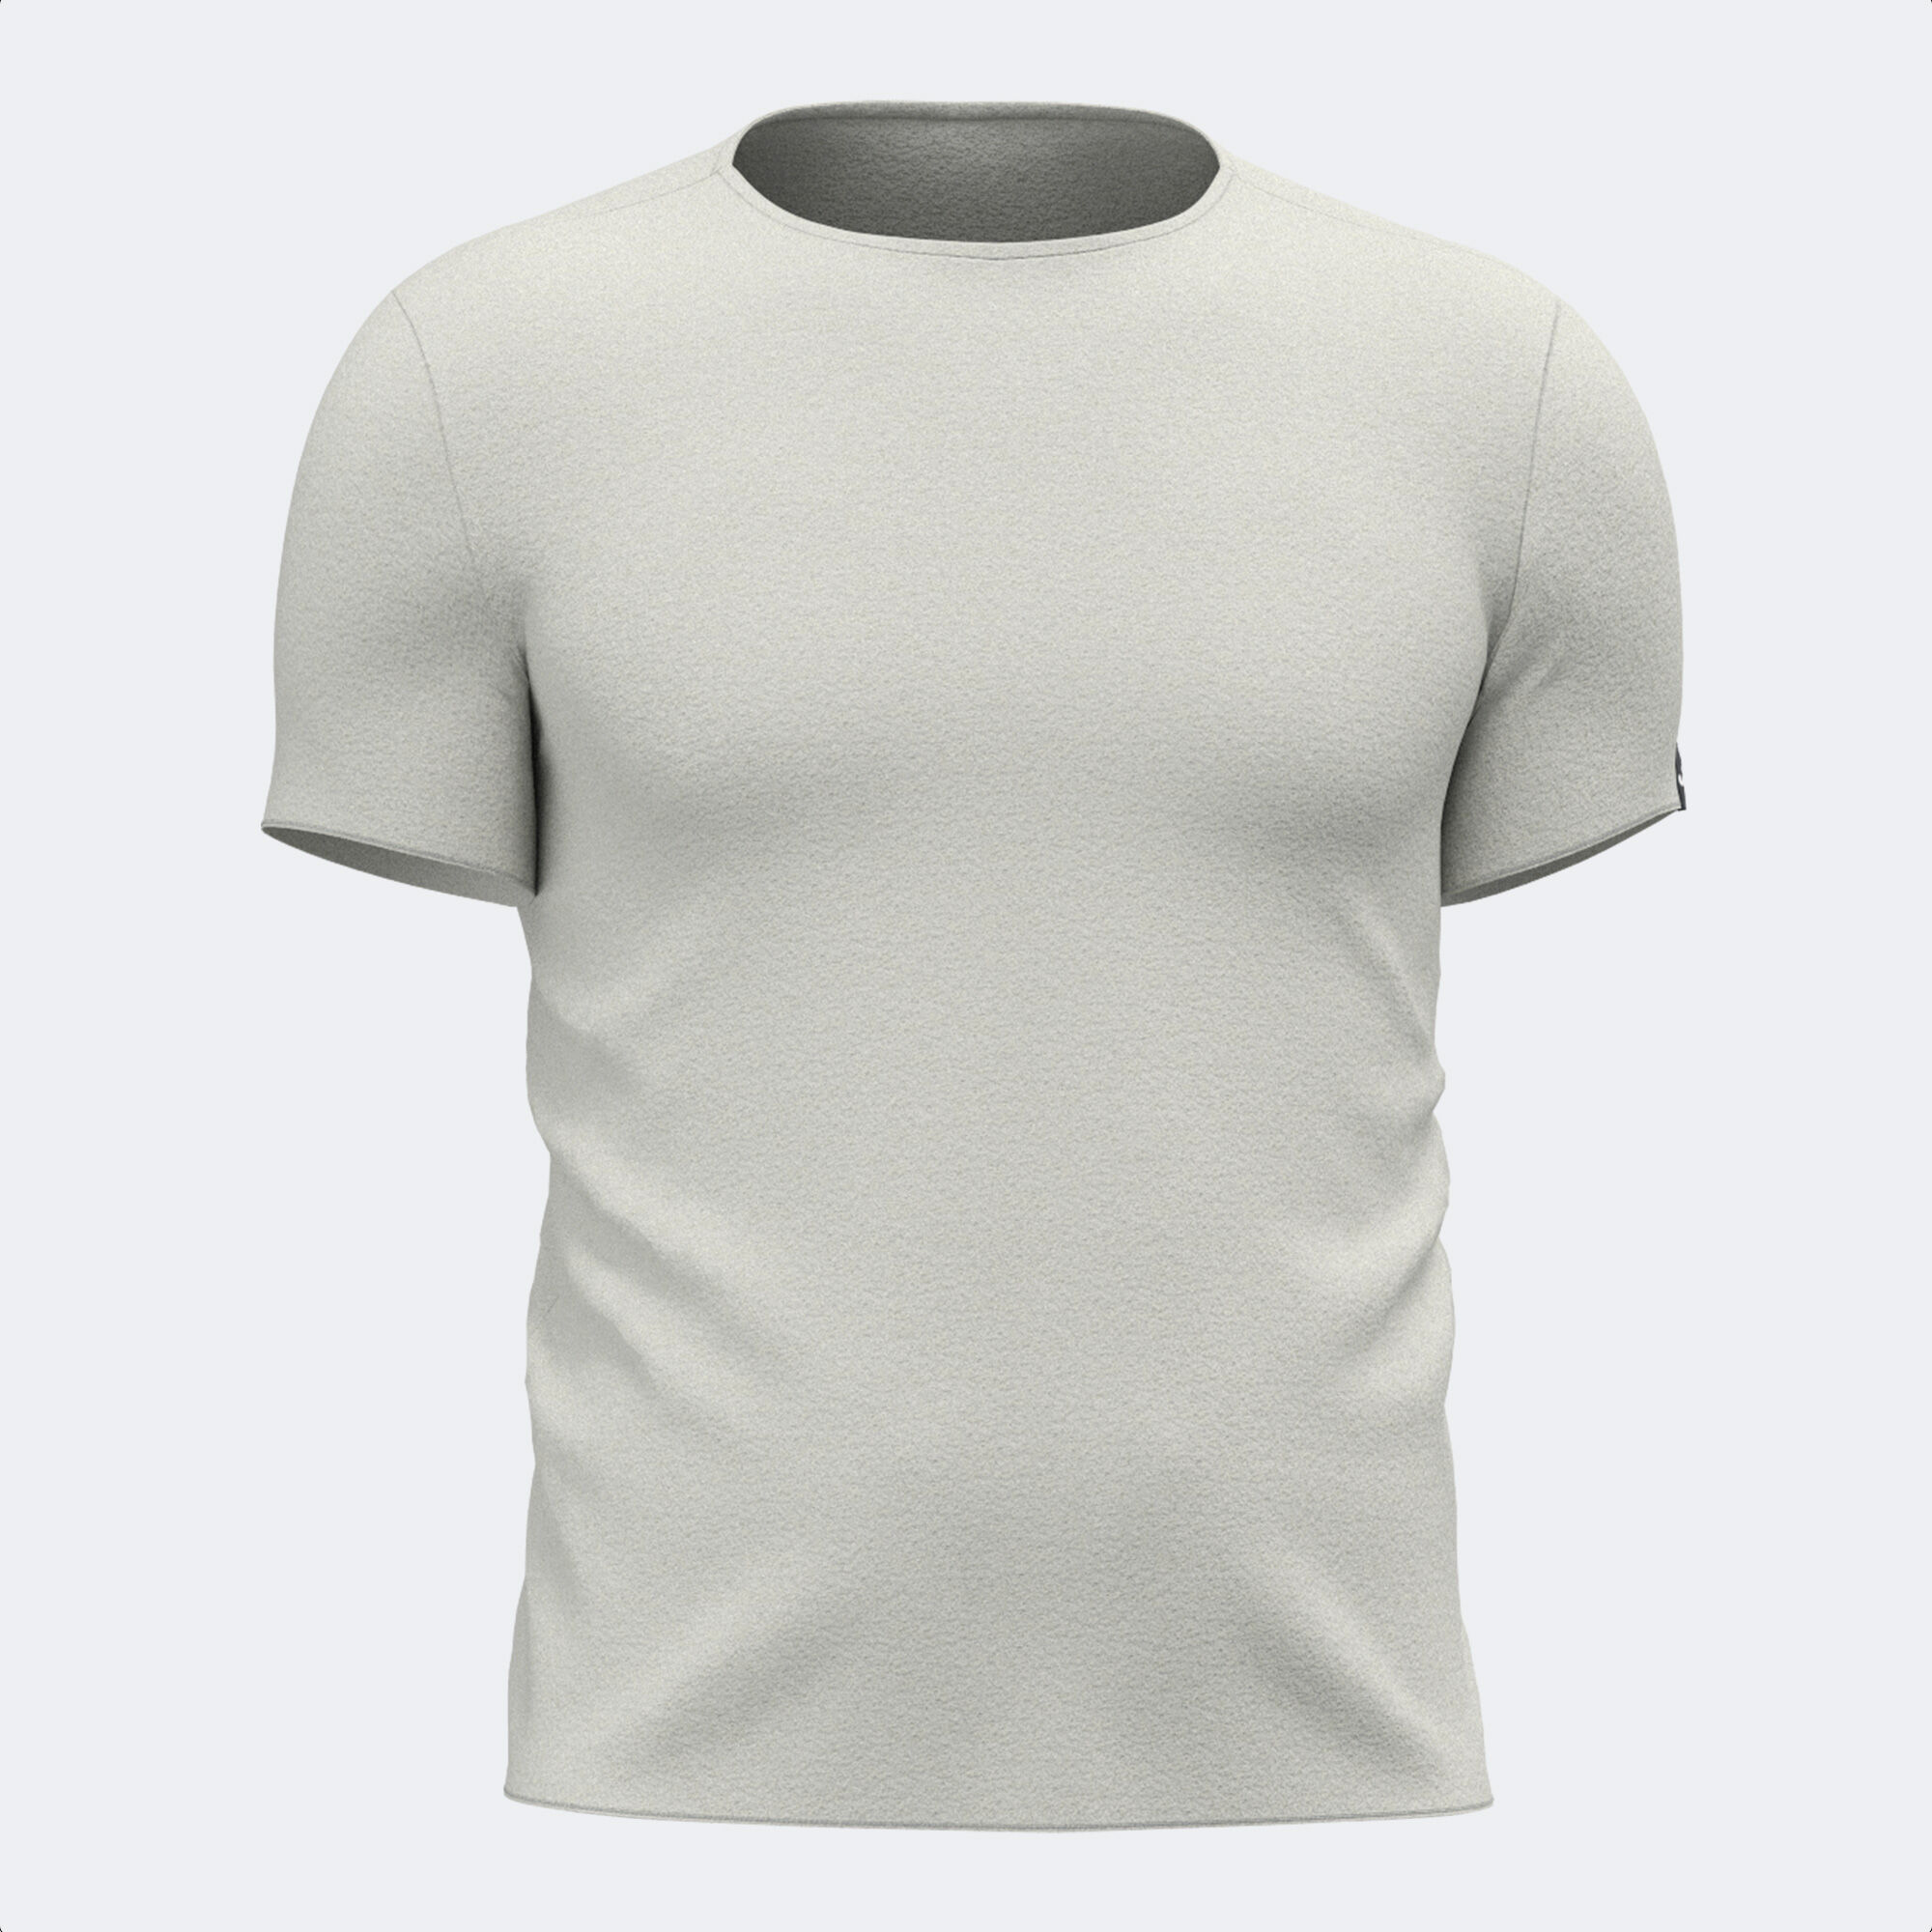 Camiseta manga corta hombre R-Combi gris